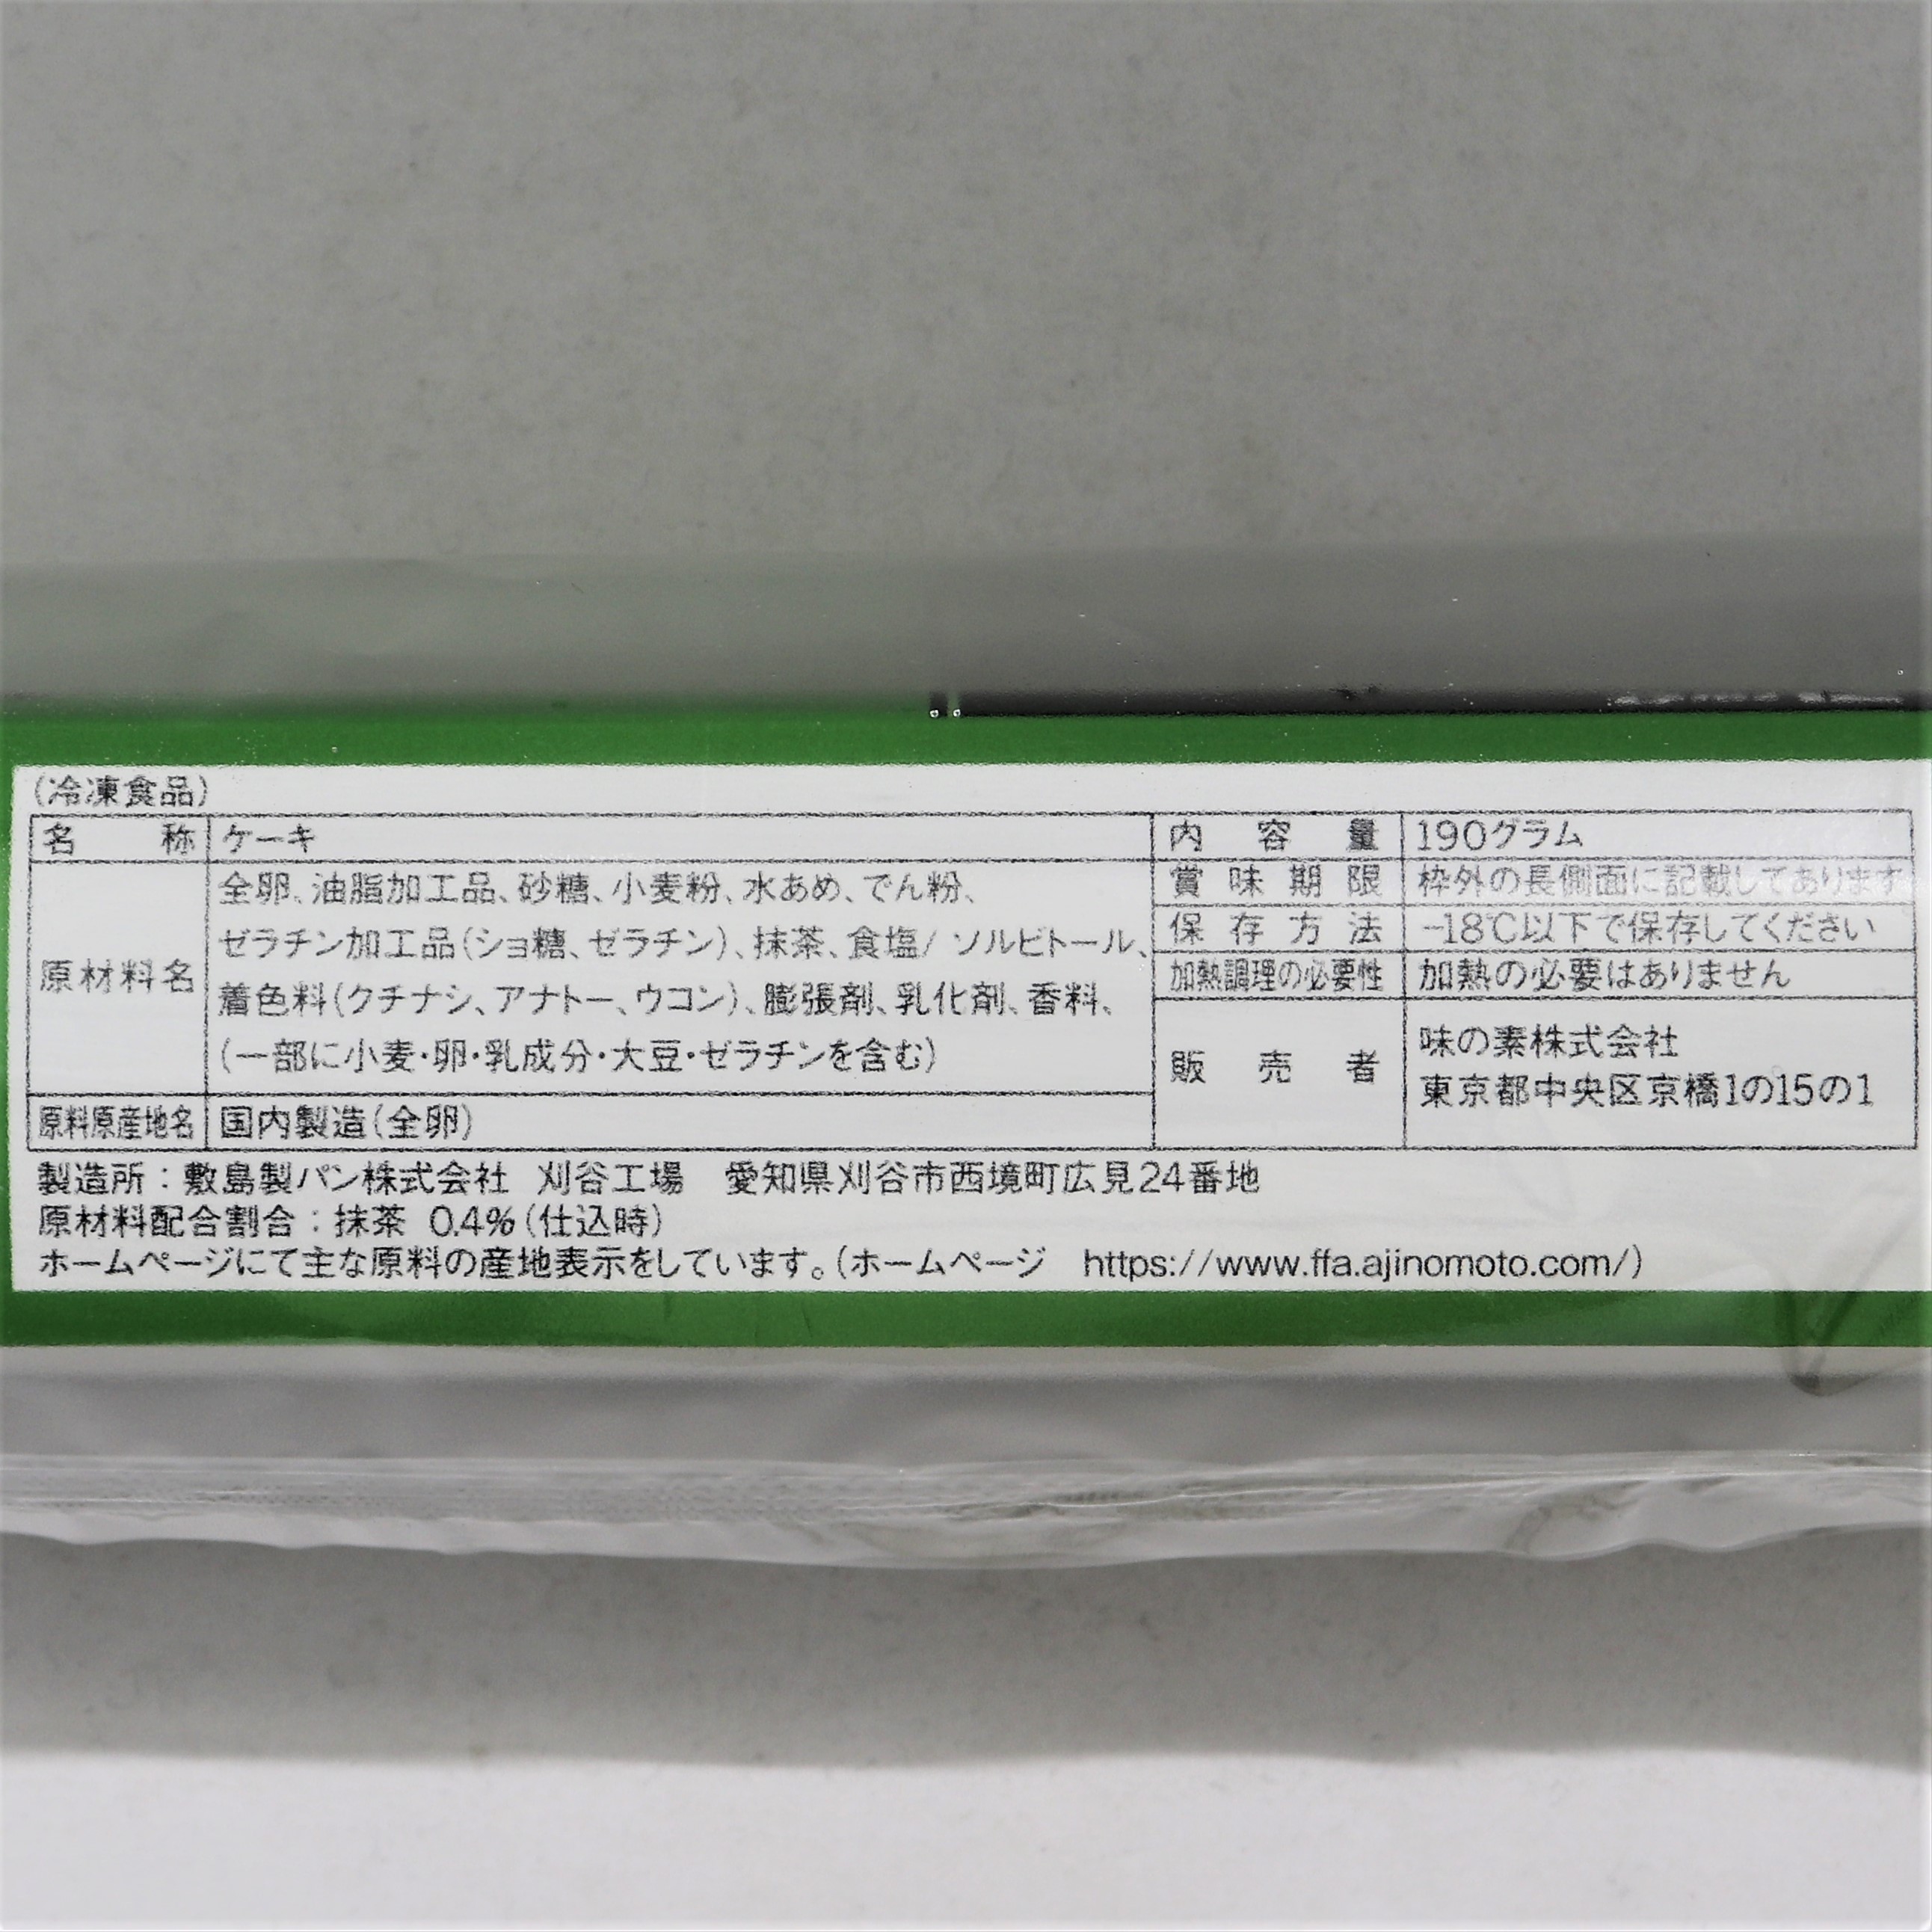 【業務用】味の素冷凍食品 フレックロールケーキ抹茶 190g